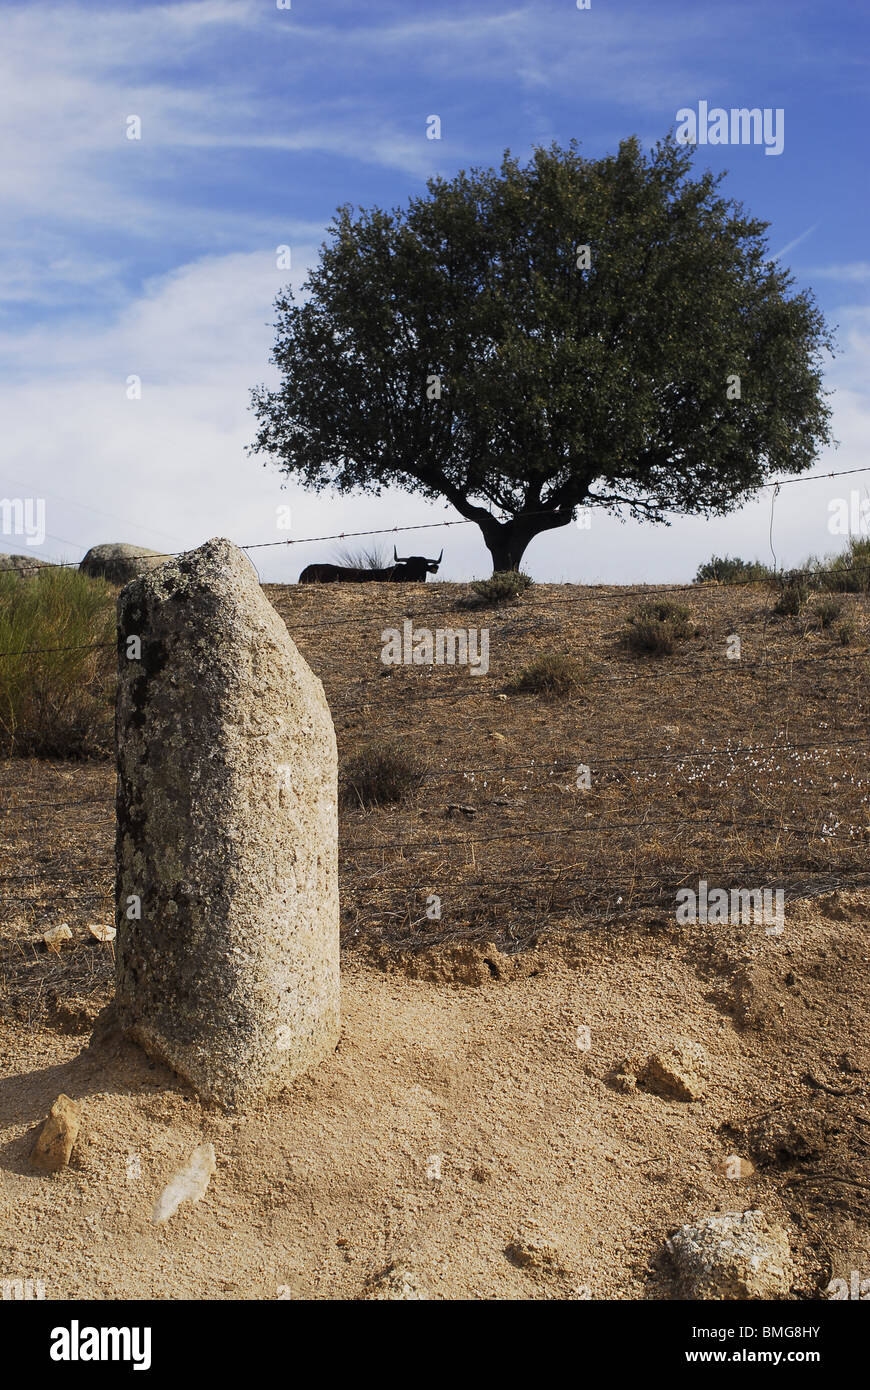 Miliario romano , provincia de Caceres. Estremadura, España. Miliare romano nella provincia di Cáceres, regione Estremadura, Spagna Foto Stock